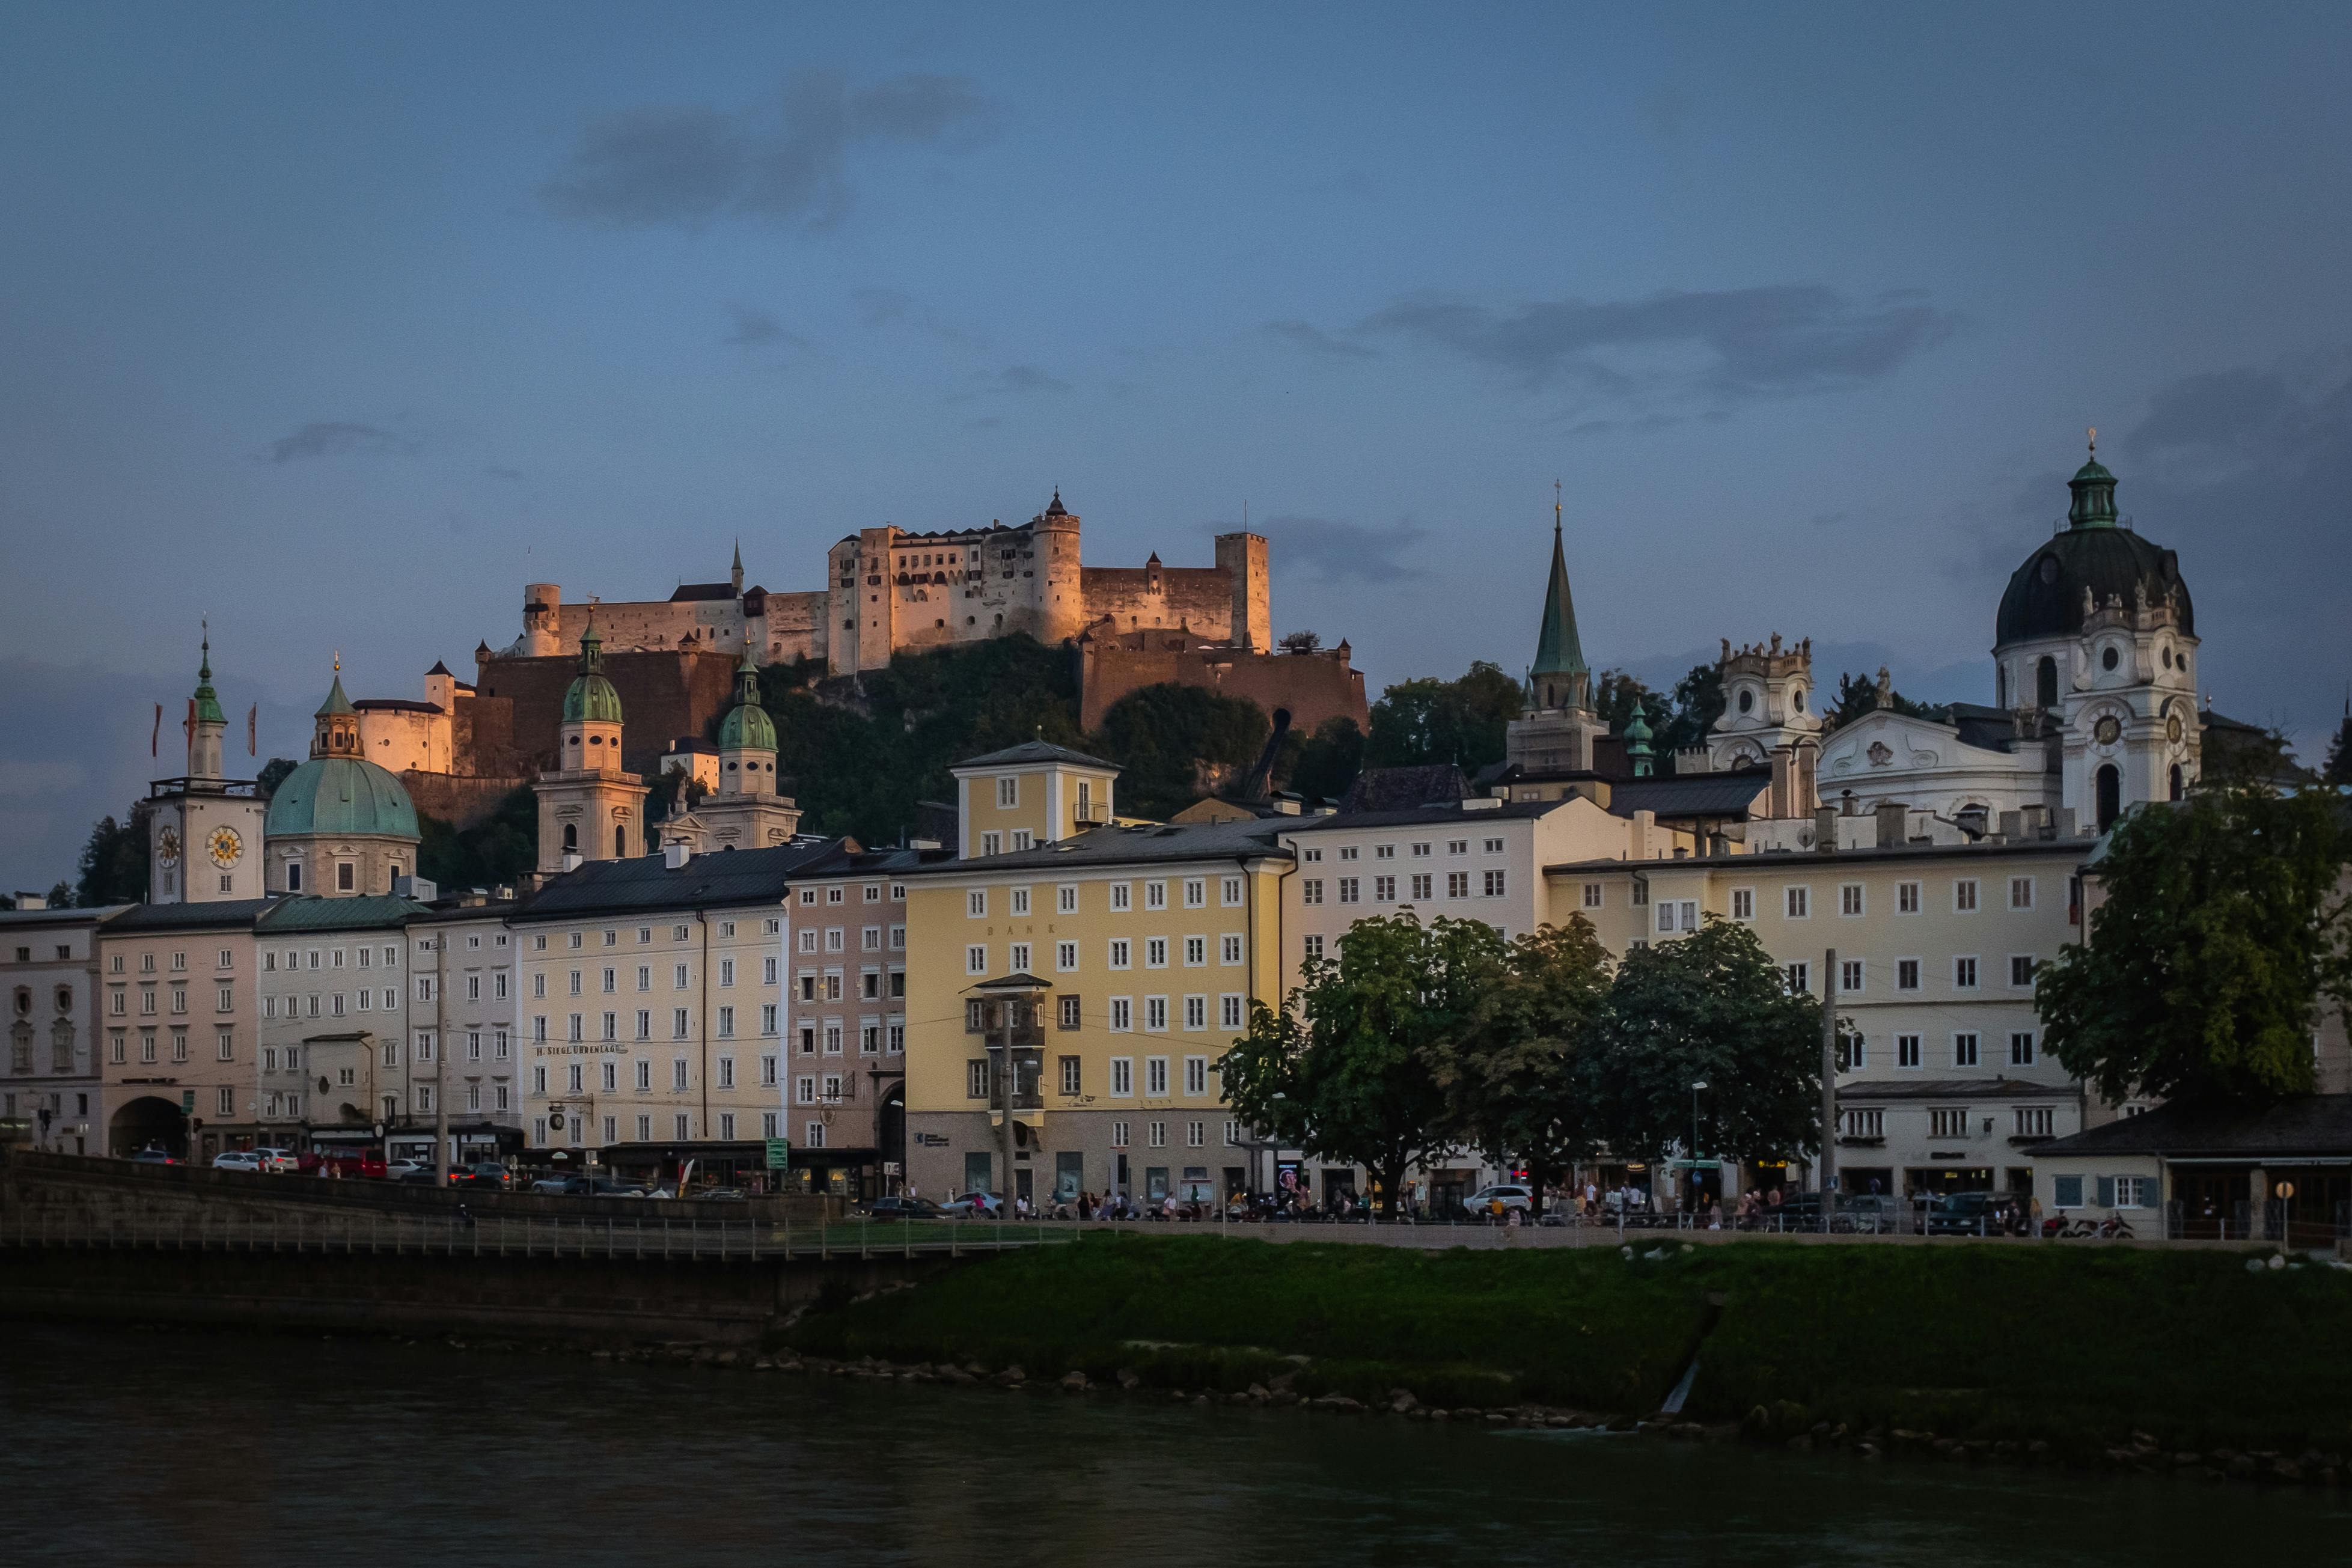 Samodzielny spacer odkrywczy po Salzburgu z muzyczną historią Mozarta